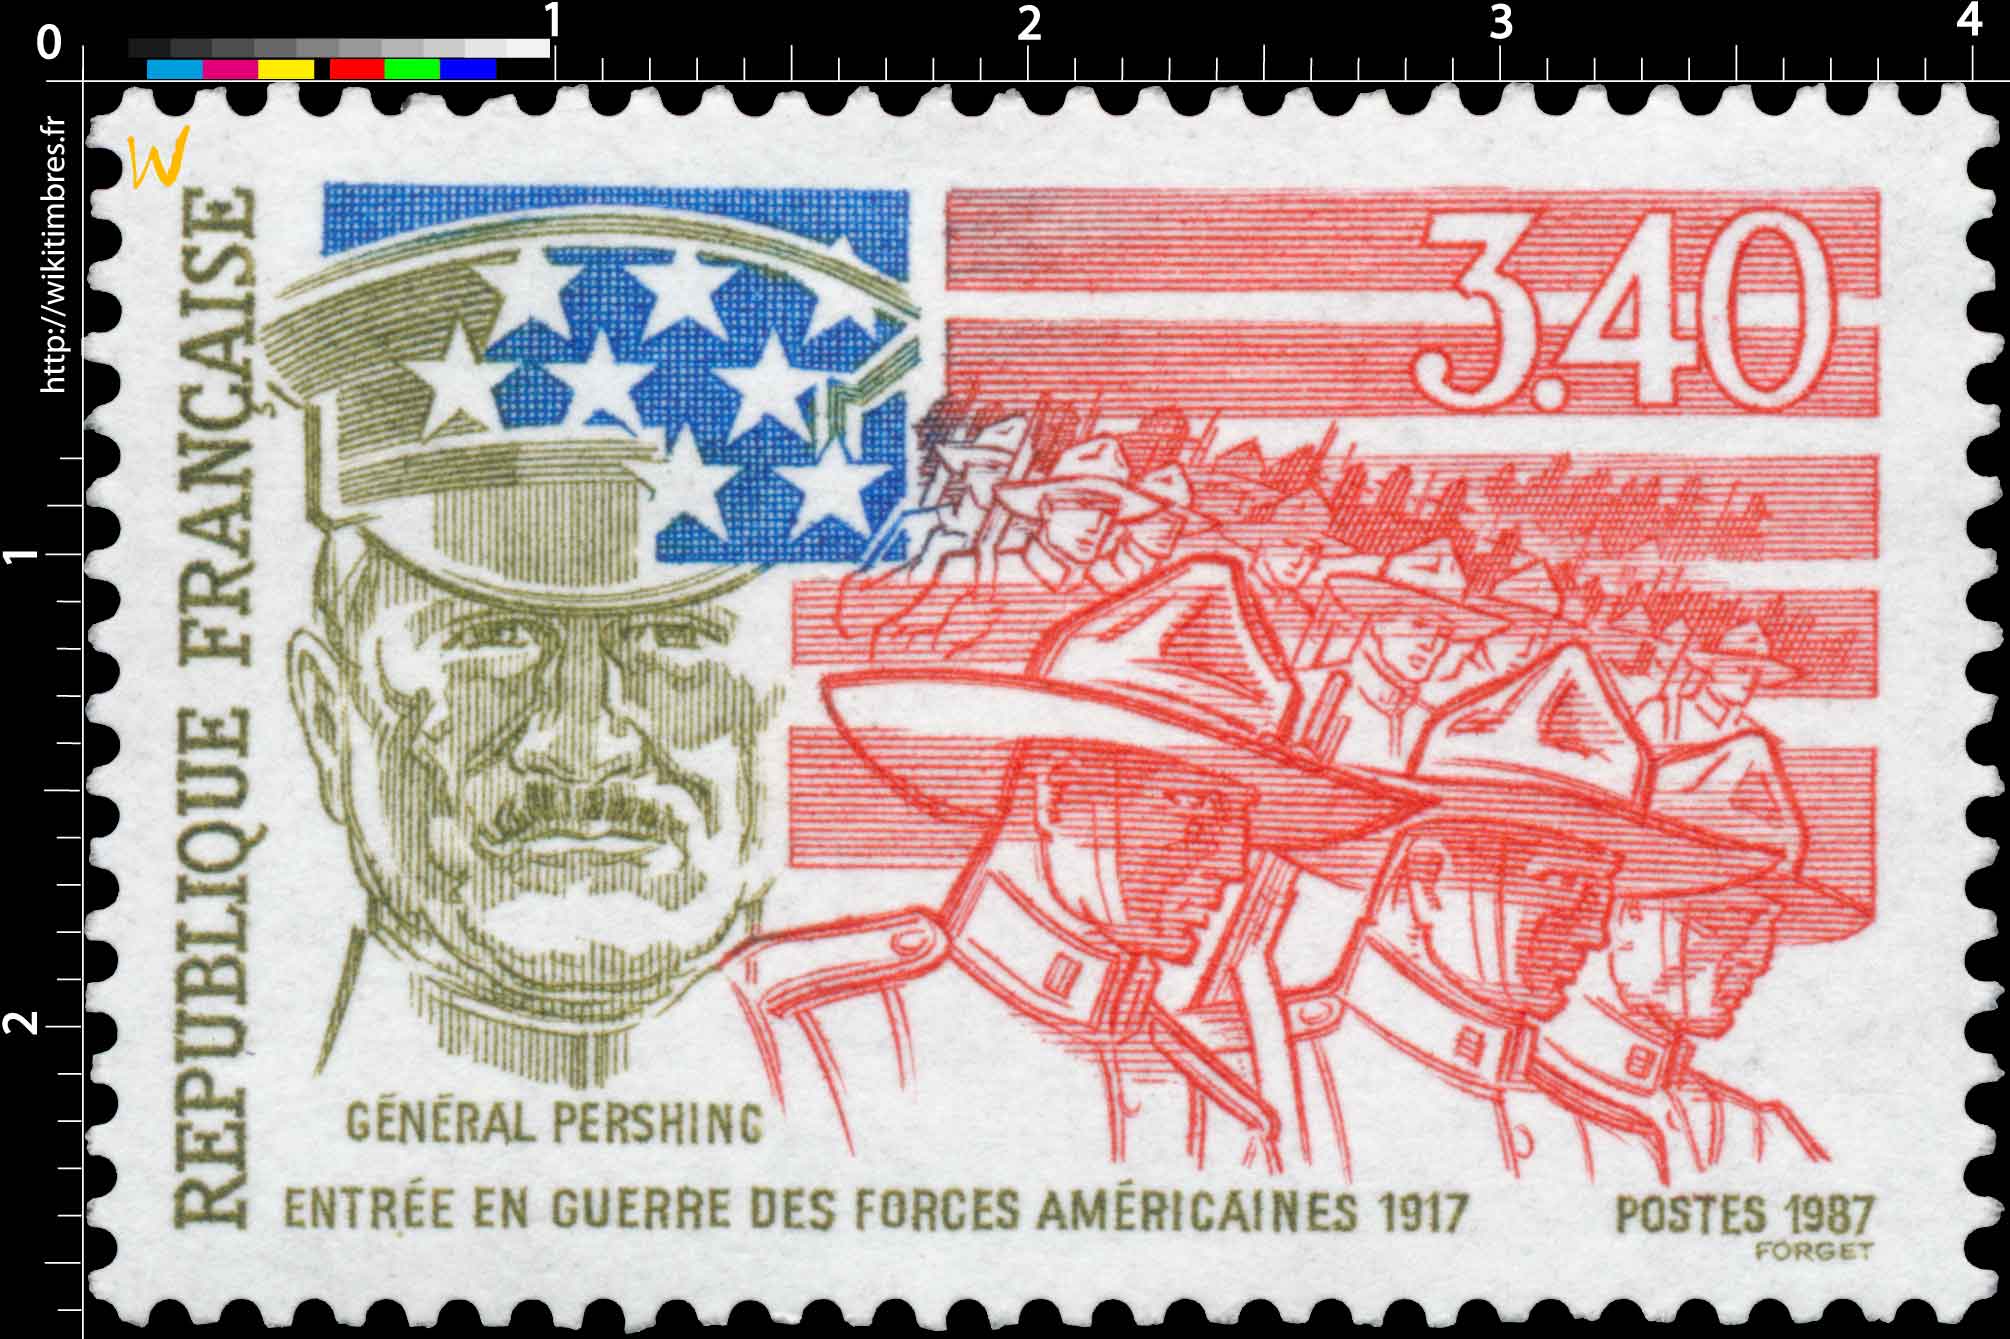 1987 GENERAL PERSHING ENTRÉE EN GUERRE DES FORCES AMÉRICAINES 1917